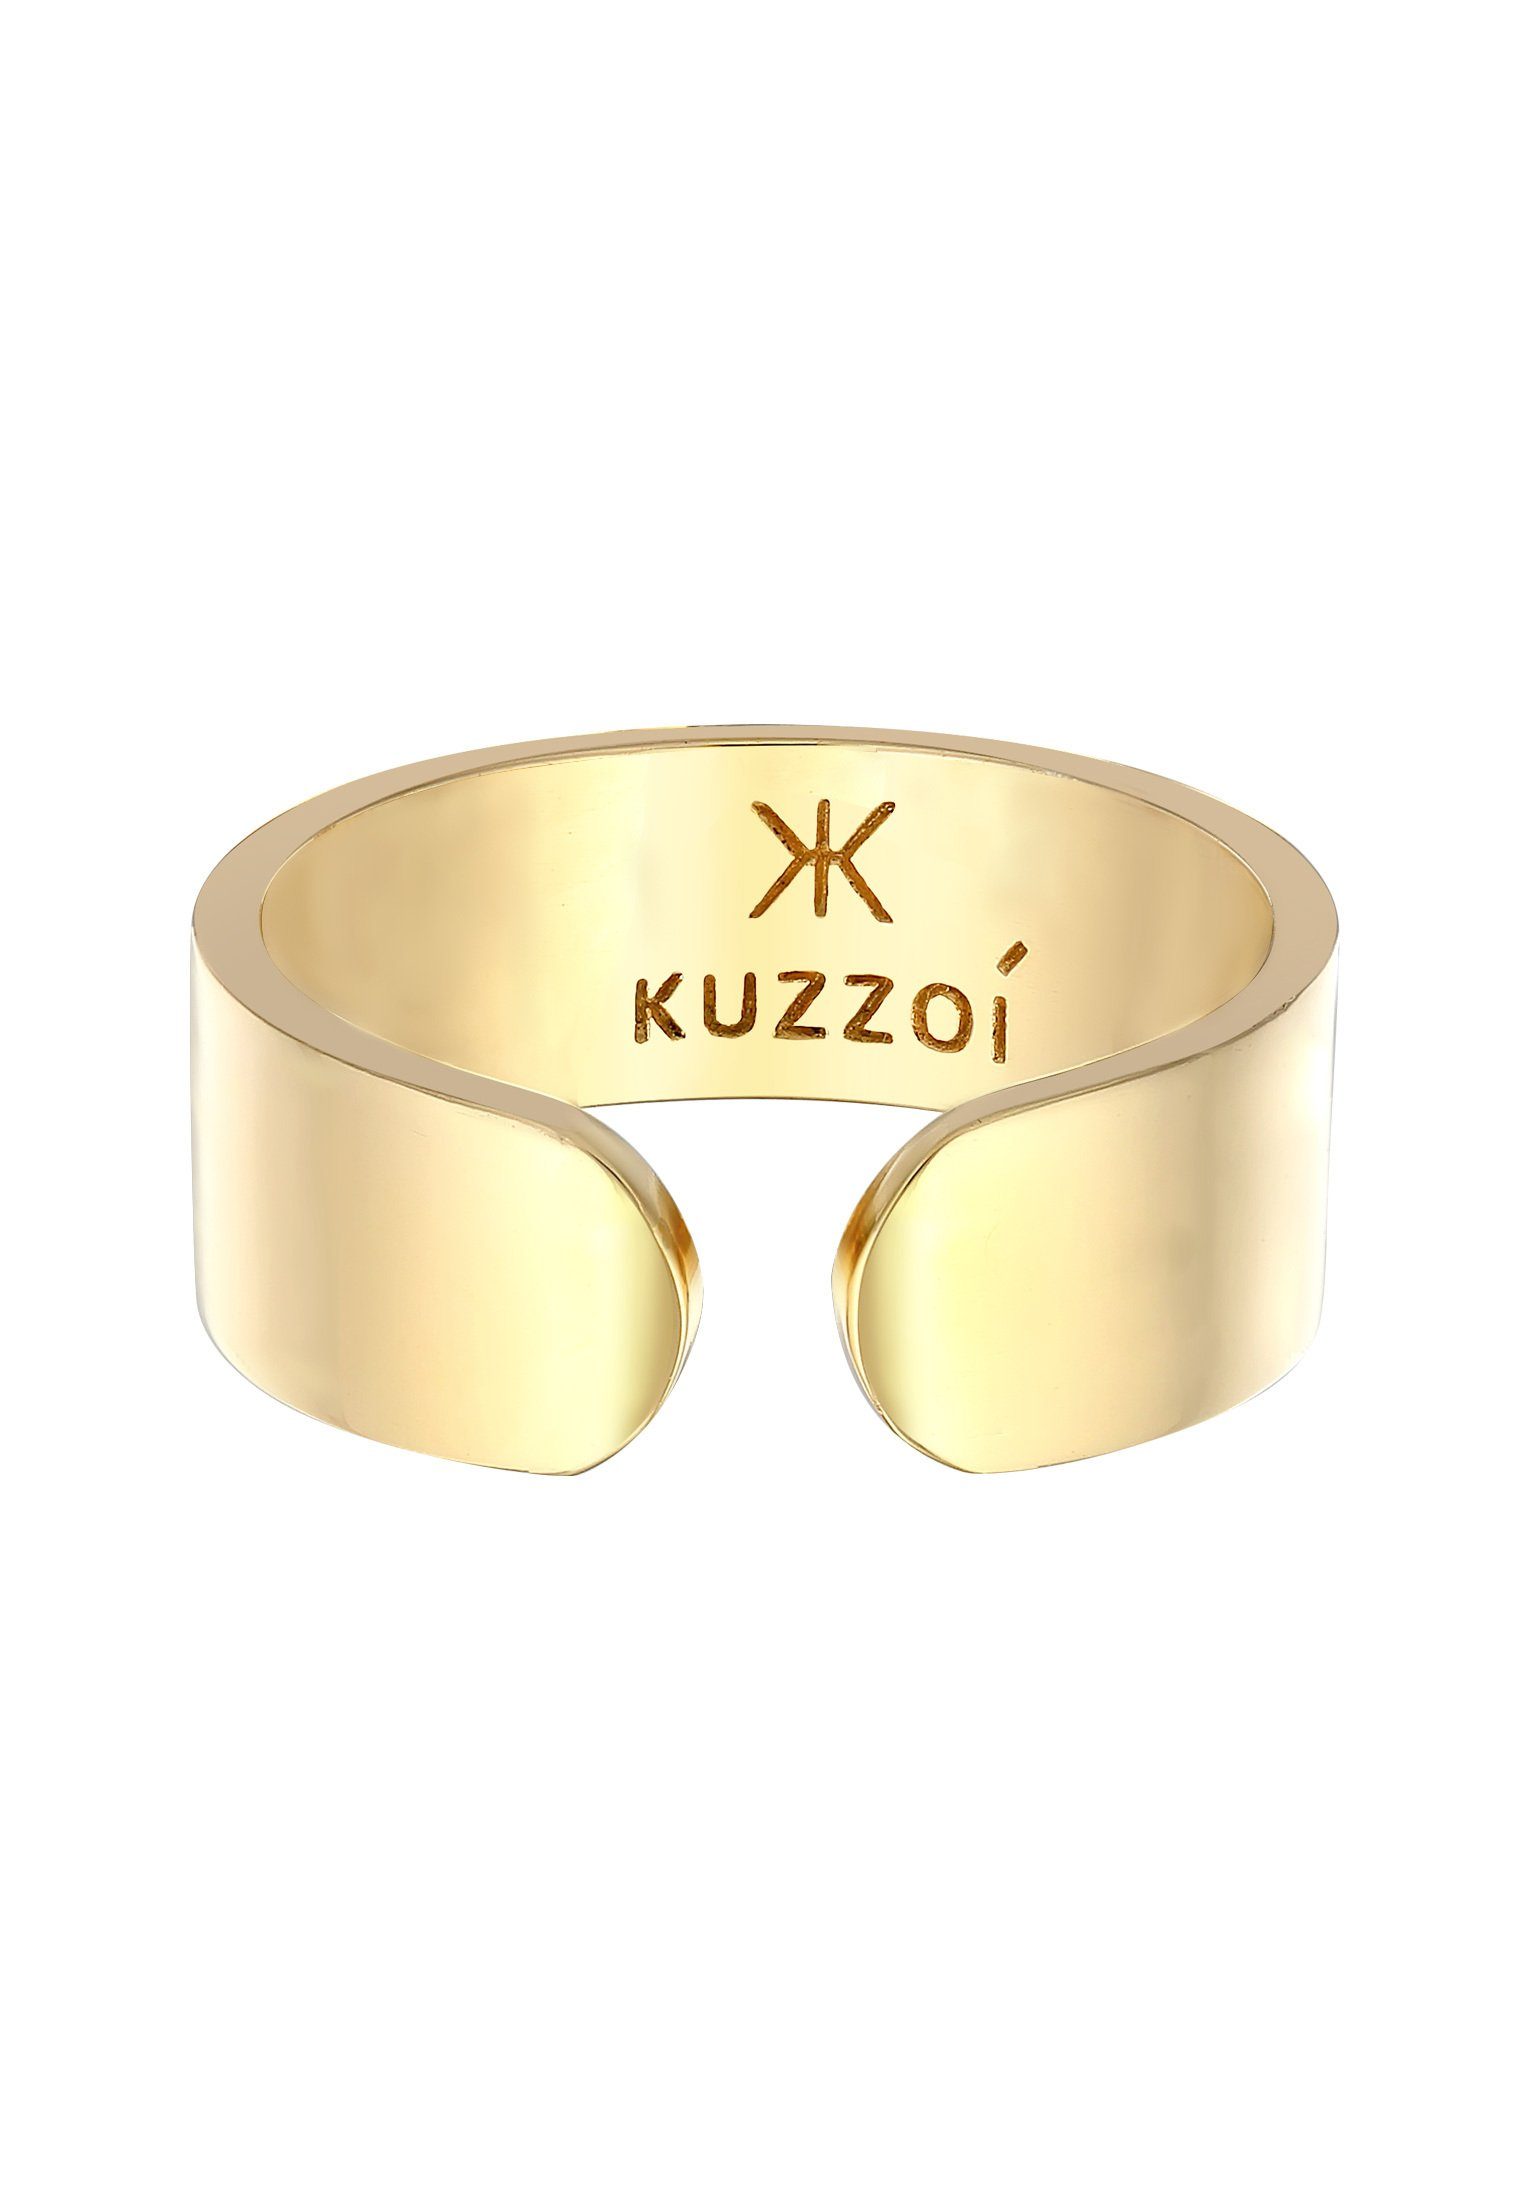 Bandring Silberring Silber Kuzzoi Gold Design Offen Klares 925